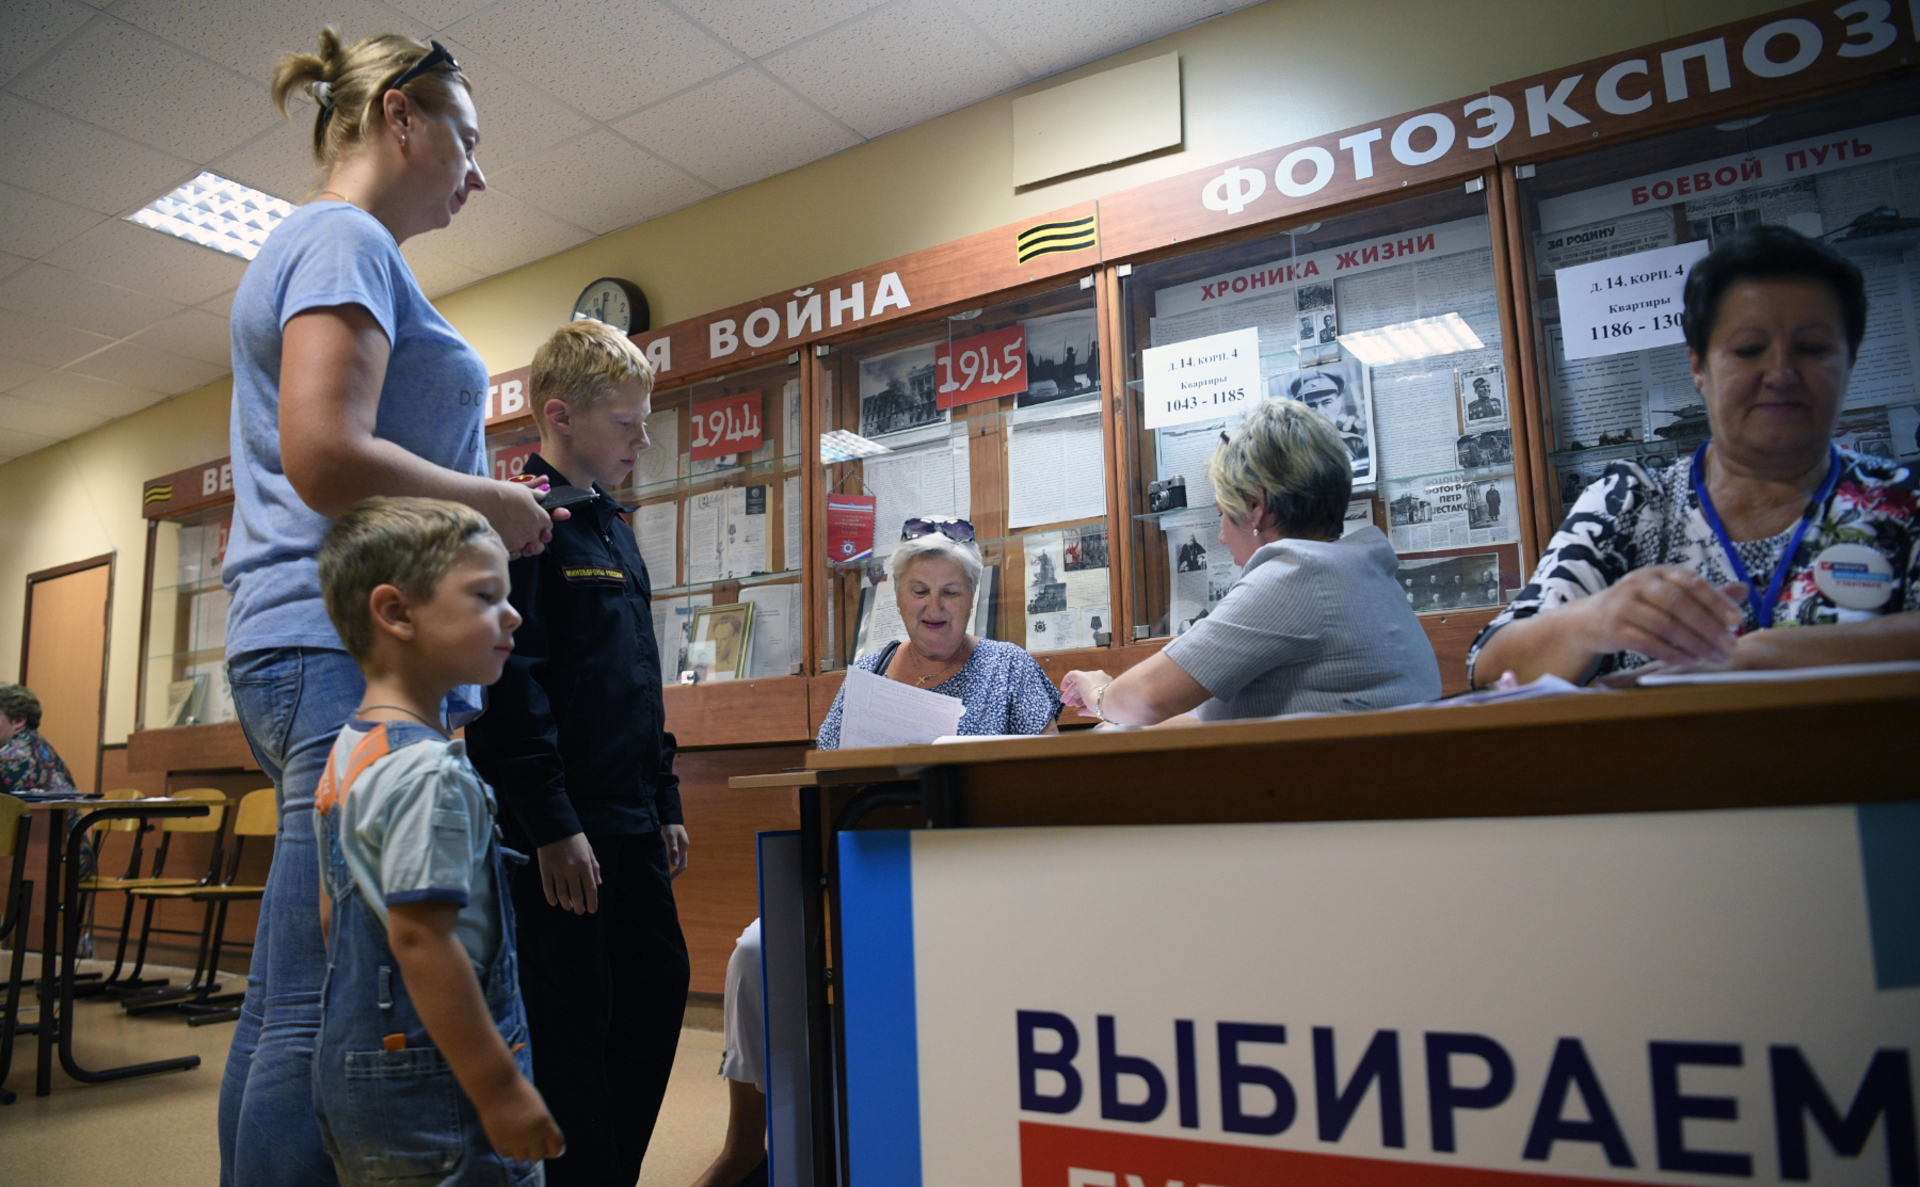 Фото: Евгений Биятов / РИА Новости